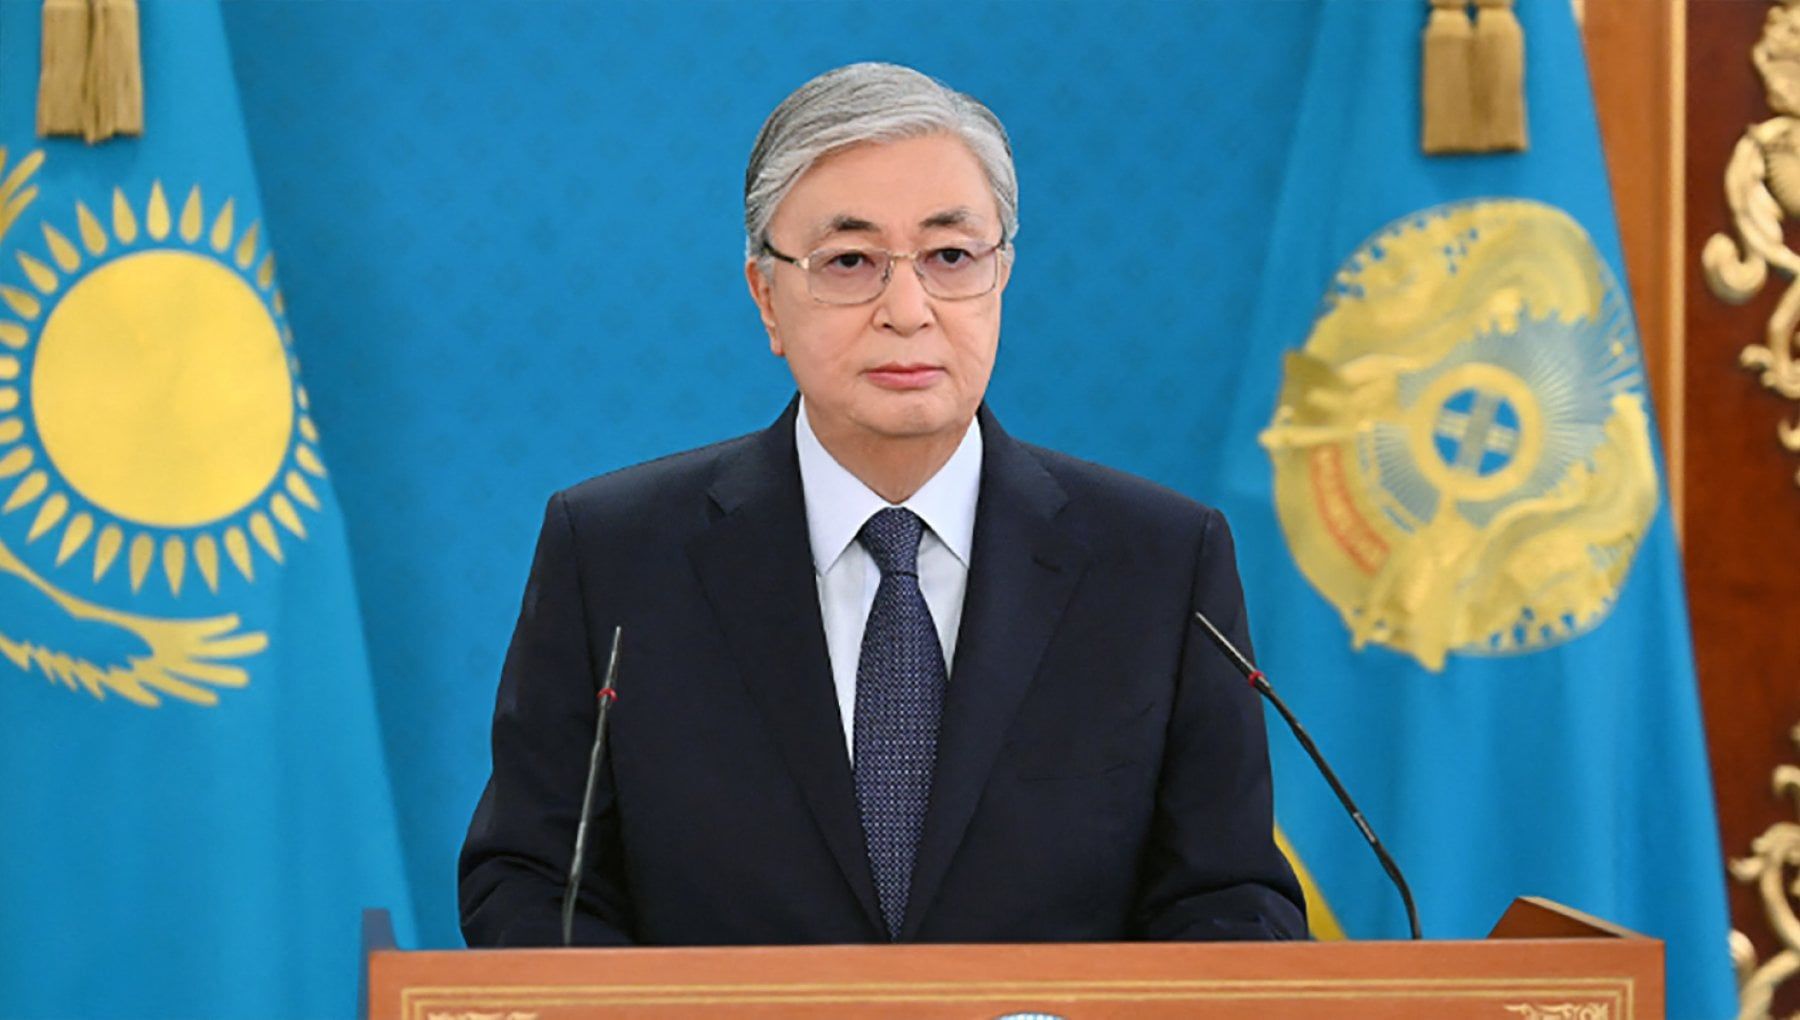 Il presidente del Kazakistan accusa: "Terroristi stranieri hanno tentato il golpe"